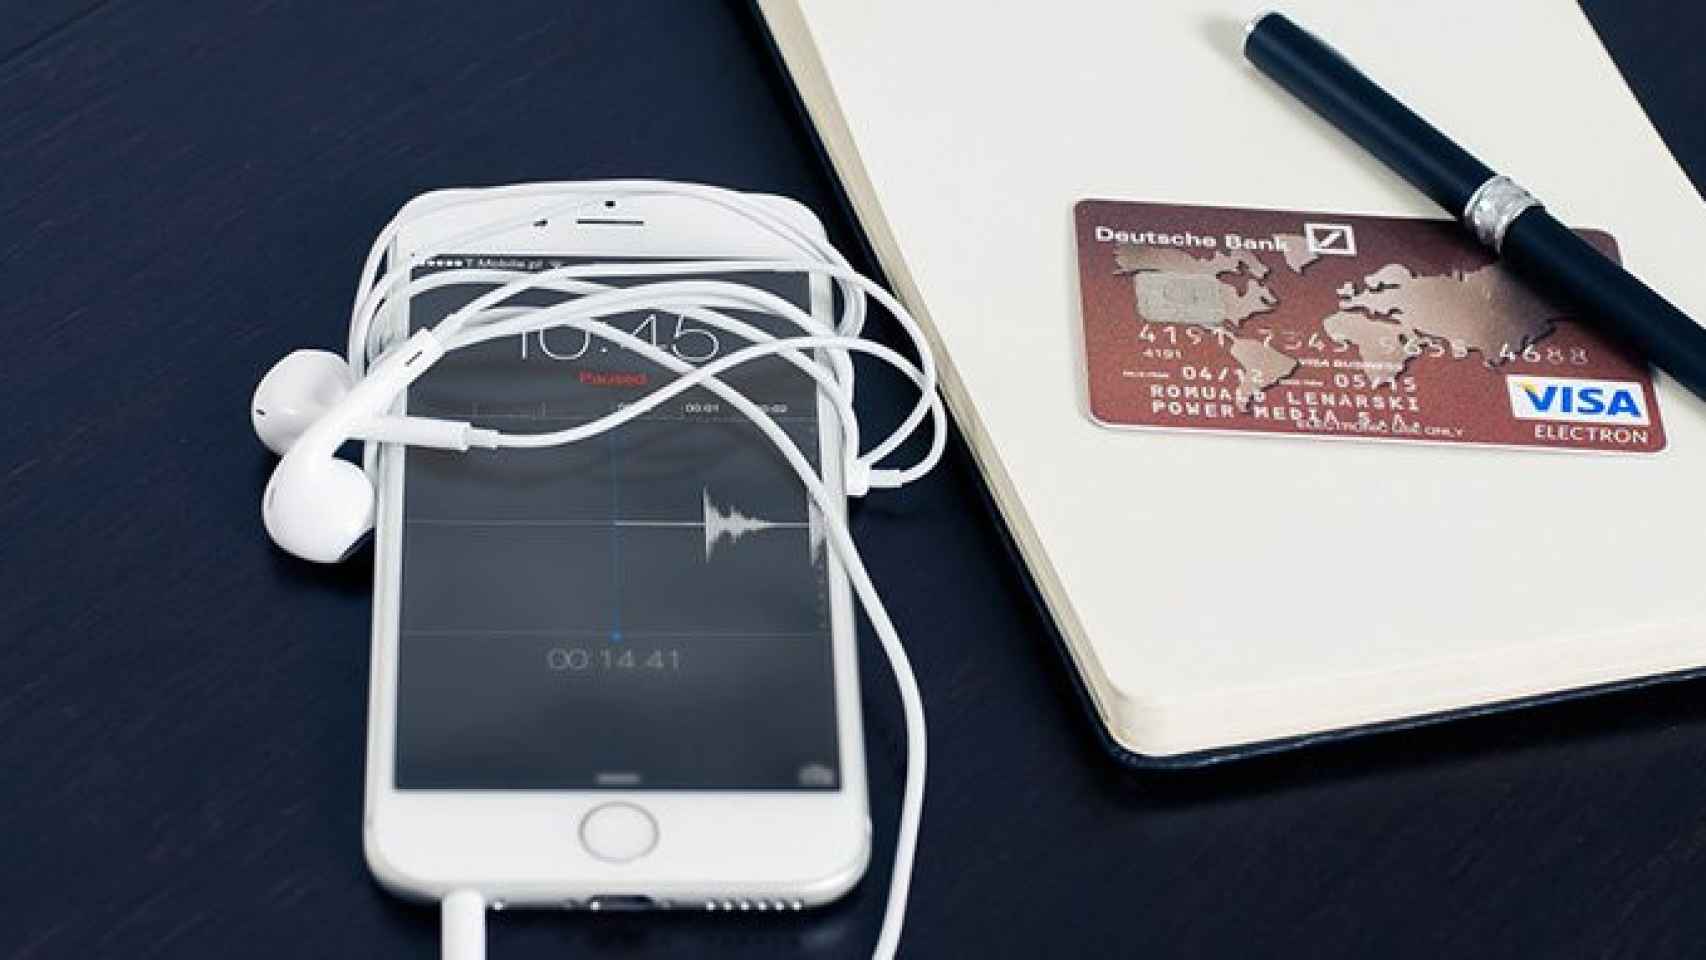 Crece el uso del teléfono móvil para realizar pagos, pero las tarjetas de crédito se mantienen / CG